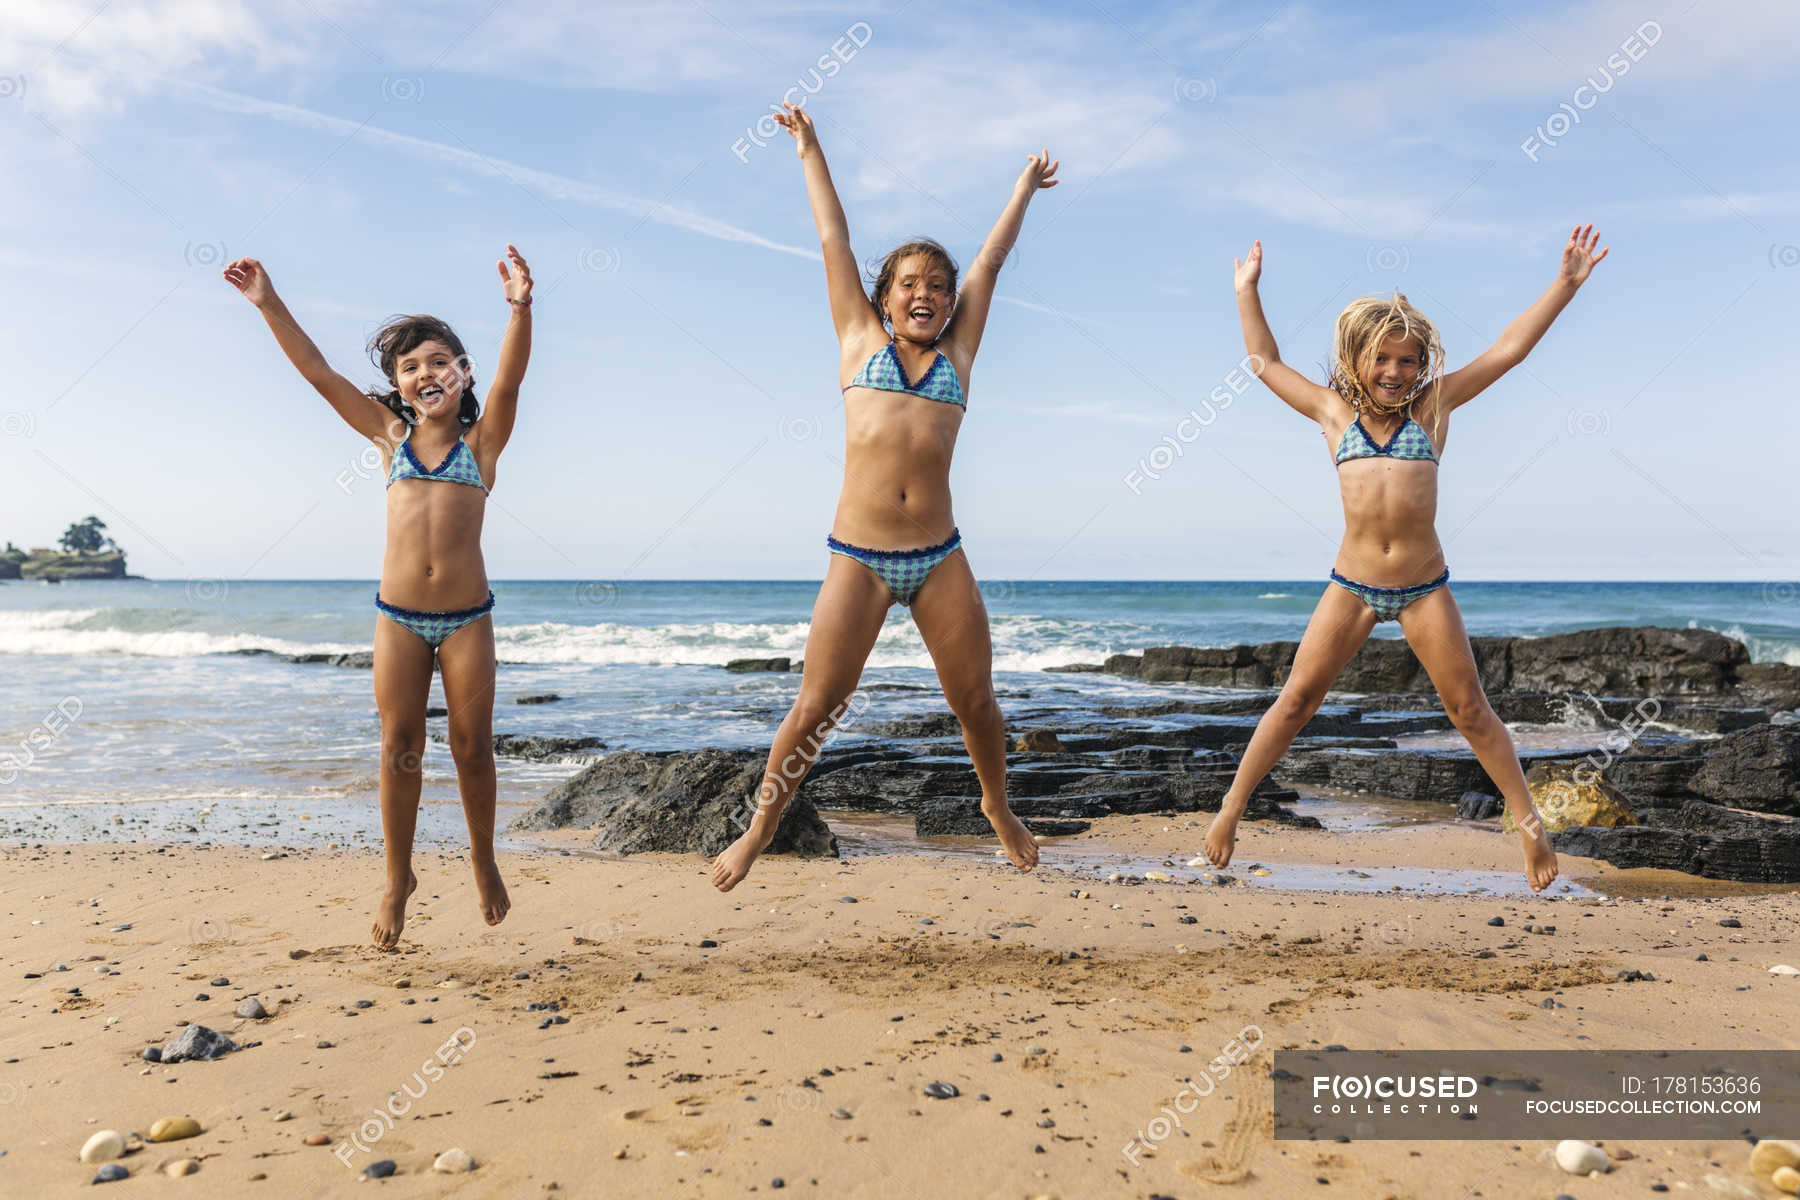 Purenudism pictures. Девушки подпрыгнули на пляже. Юниор на пляже. Девочка прыгает лет 12 на пляже. Пуренудист Фэмили.